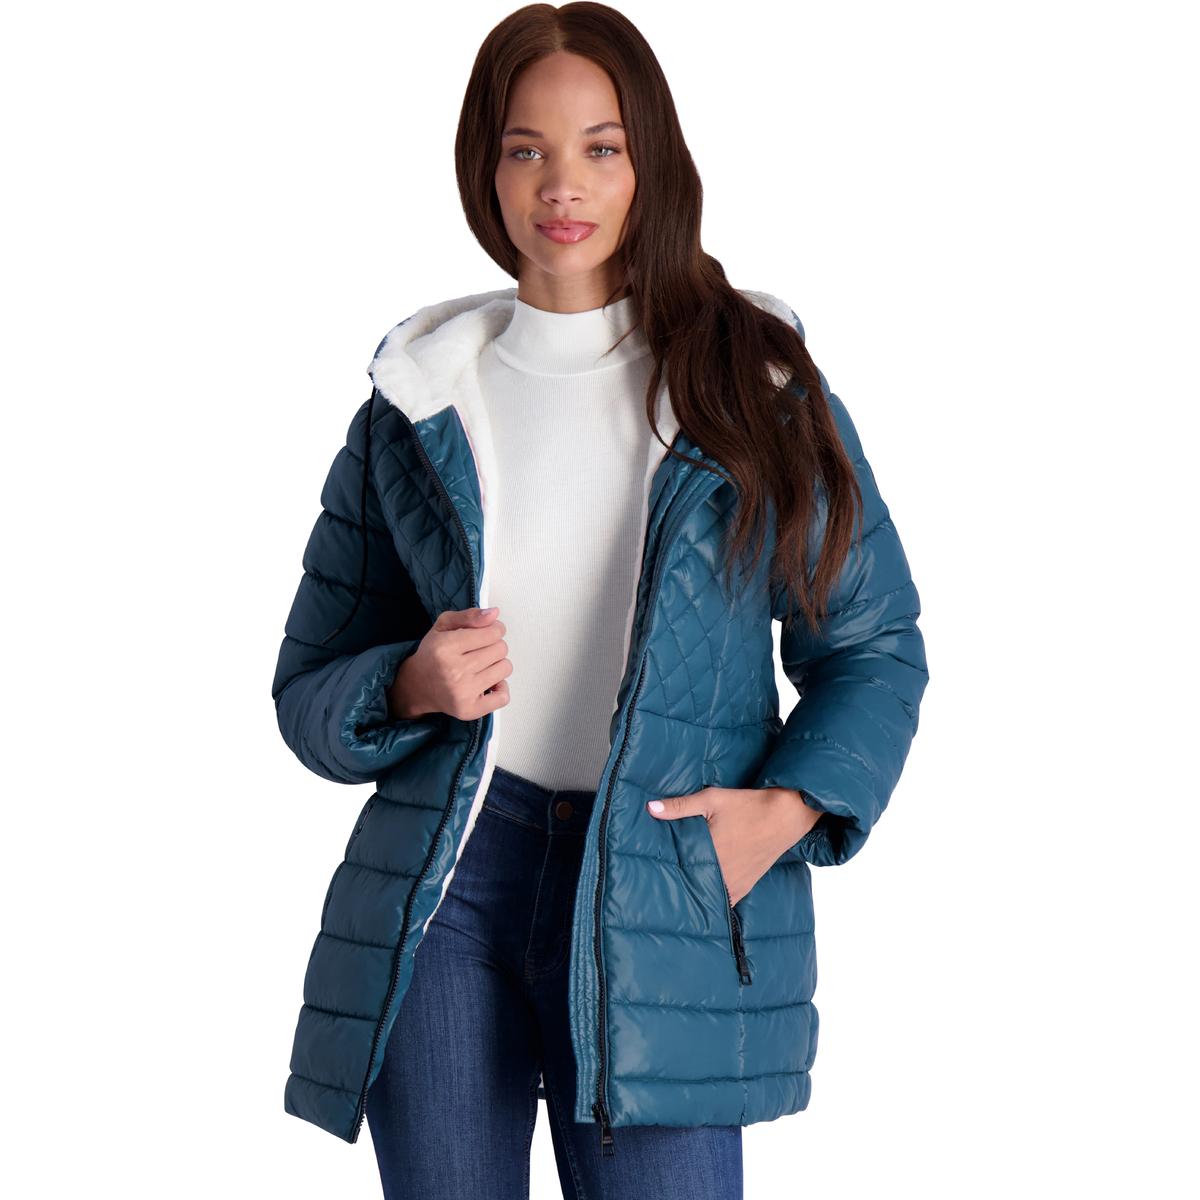  Steven Madden Women Winter Jacket - Packable Quilted